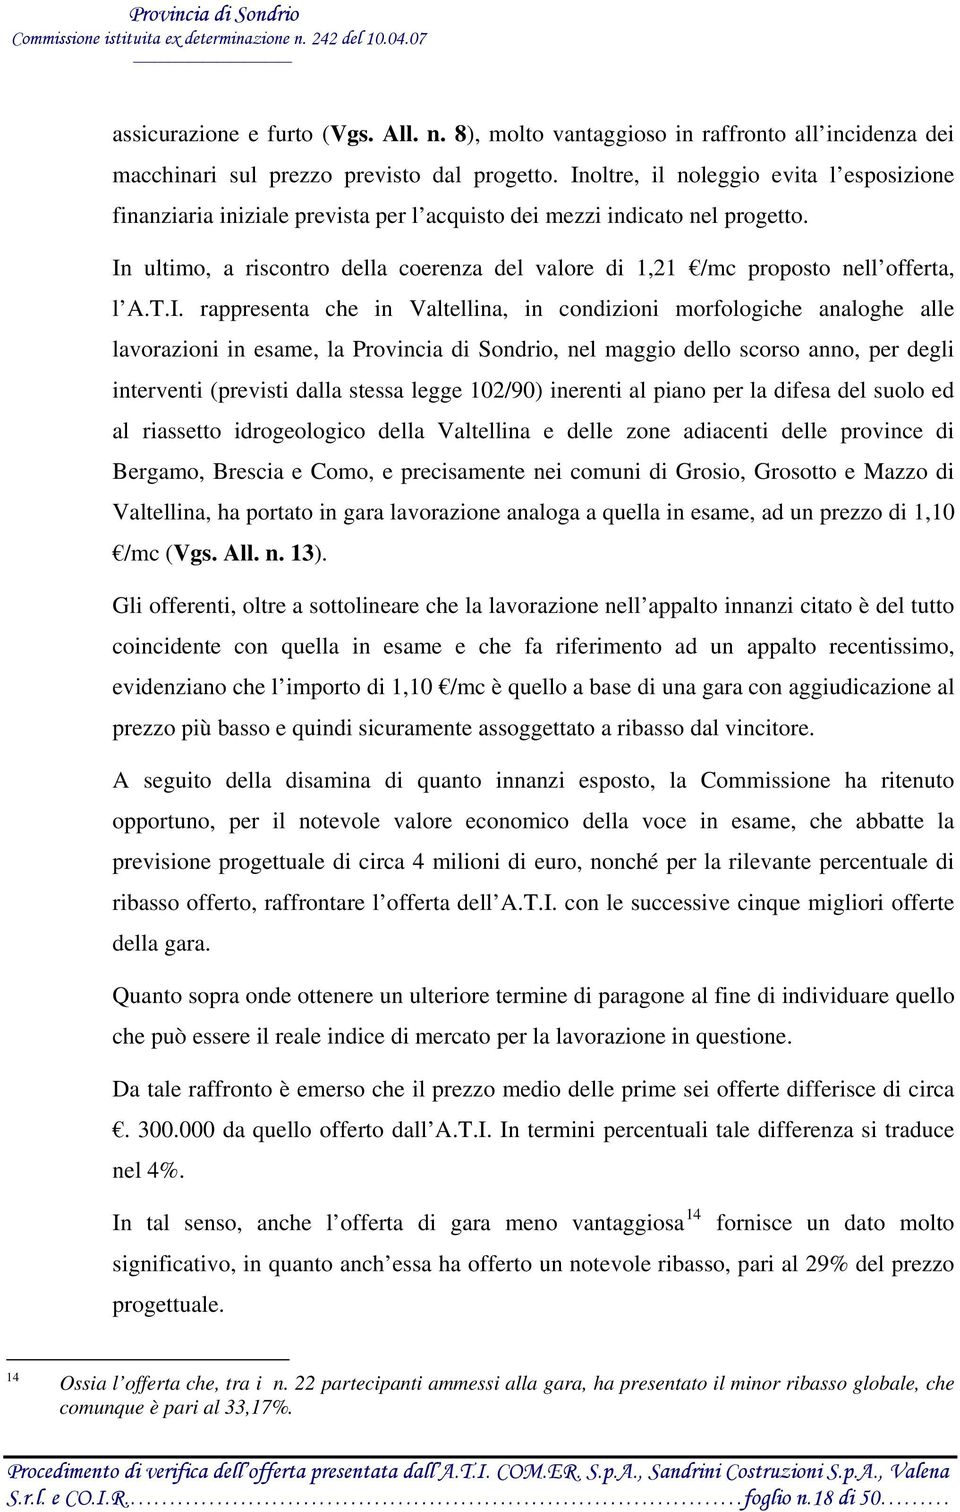 In ultimo, a riscontro della coerenza del valore di 1,21 /mc proposto nell offerta, l A.T.I. rappresenta che in Valtellina, in condizioni morfologiche analoghe alle lavorazioni in esame, la Provincia